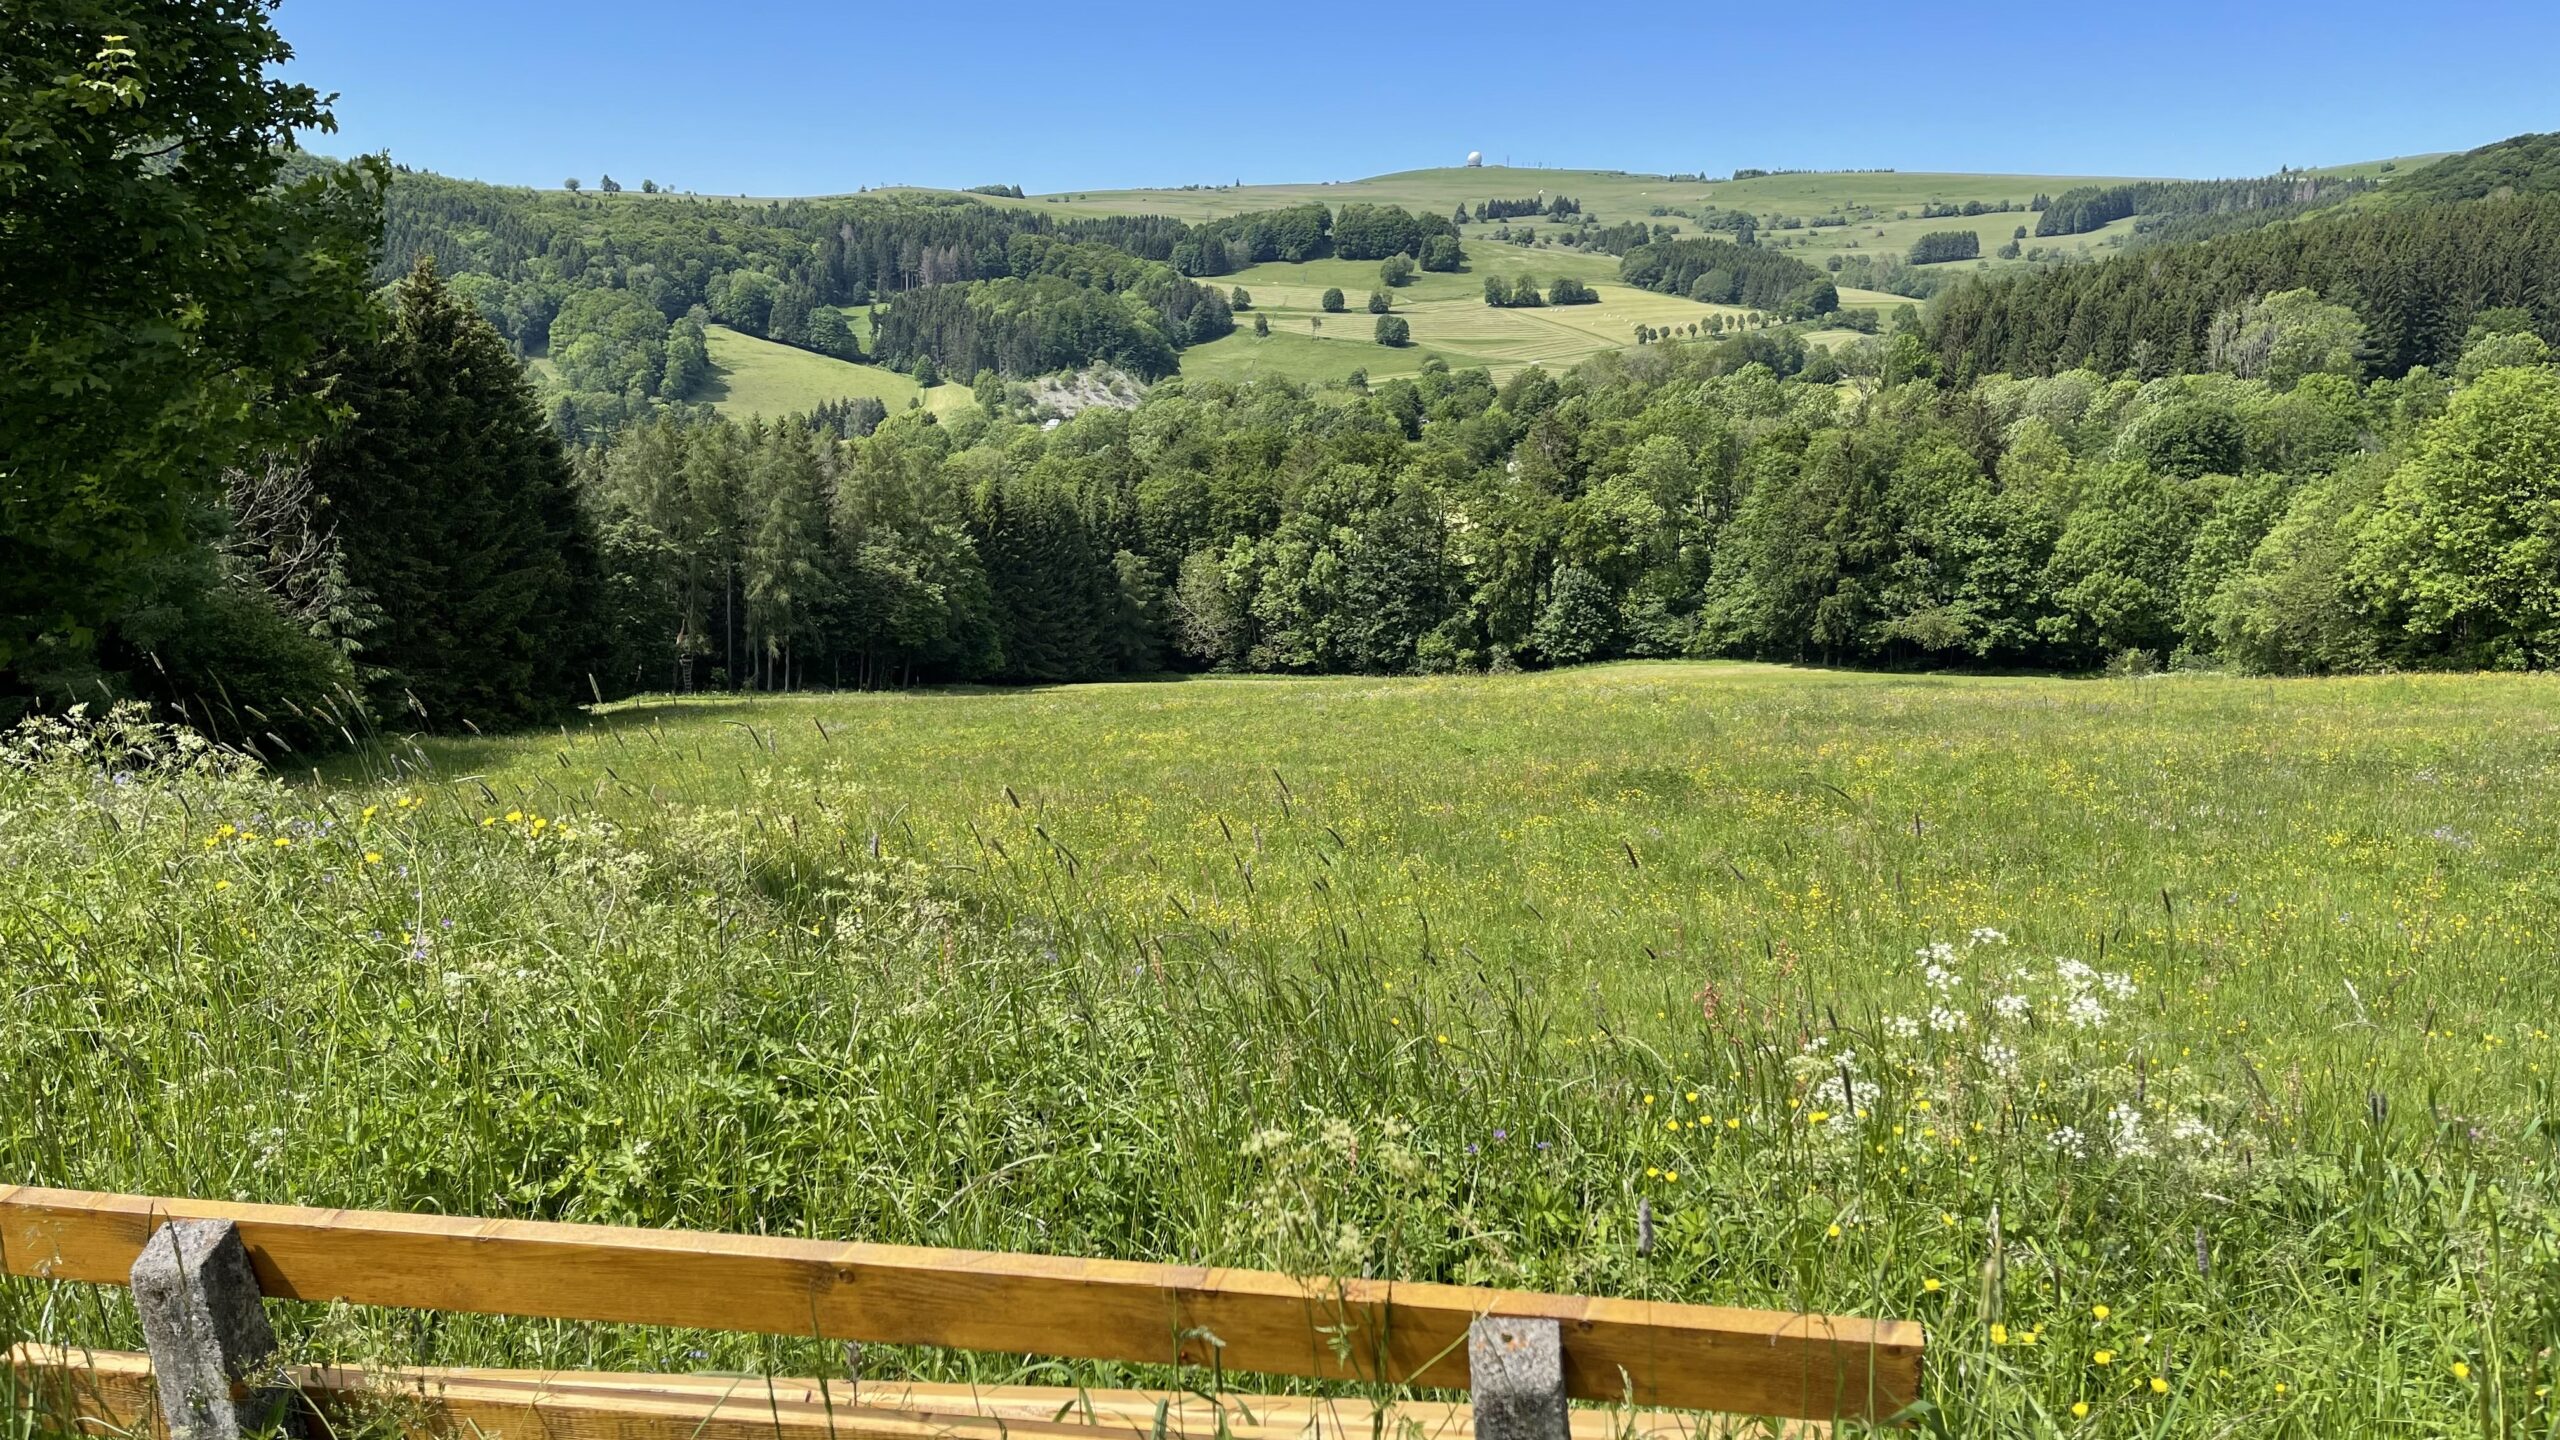 Ein Holzzaun umschließt eine Wiese mit Wildblumen. Im Hintergrund sind Bäume und sanfte Hügel unter einem klaren blauen Himmel zu sehen.